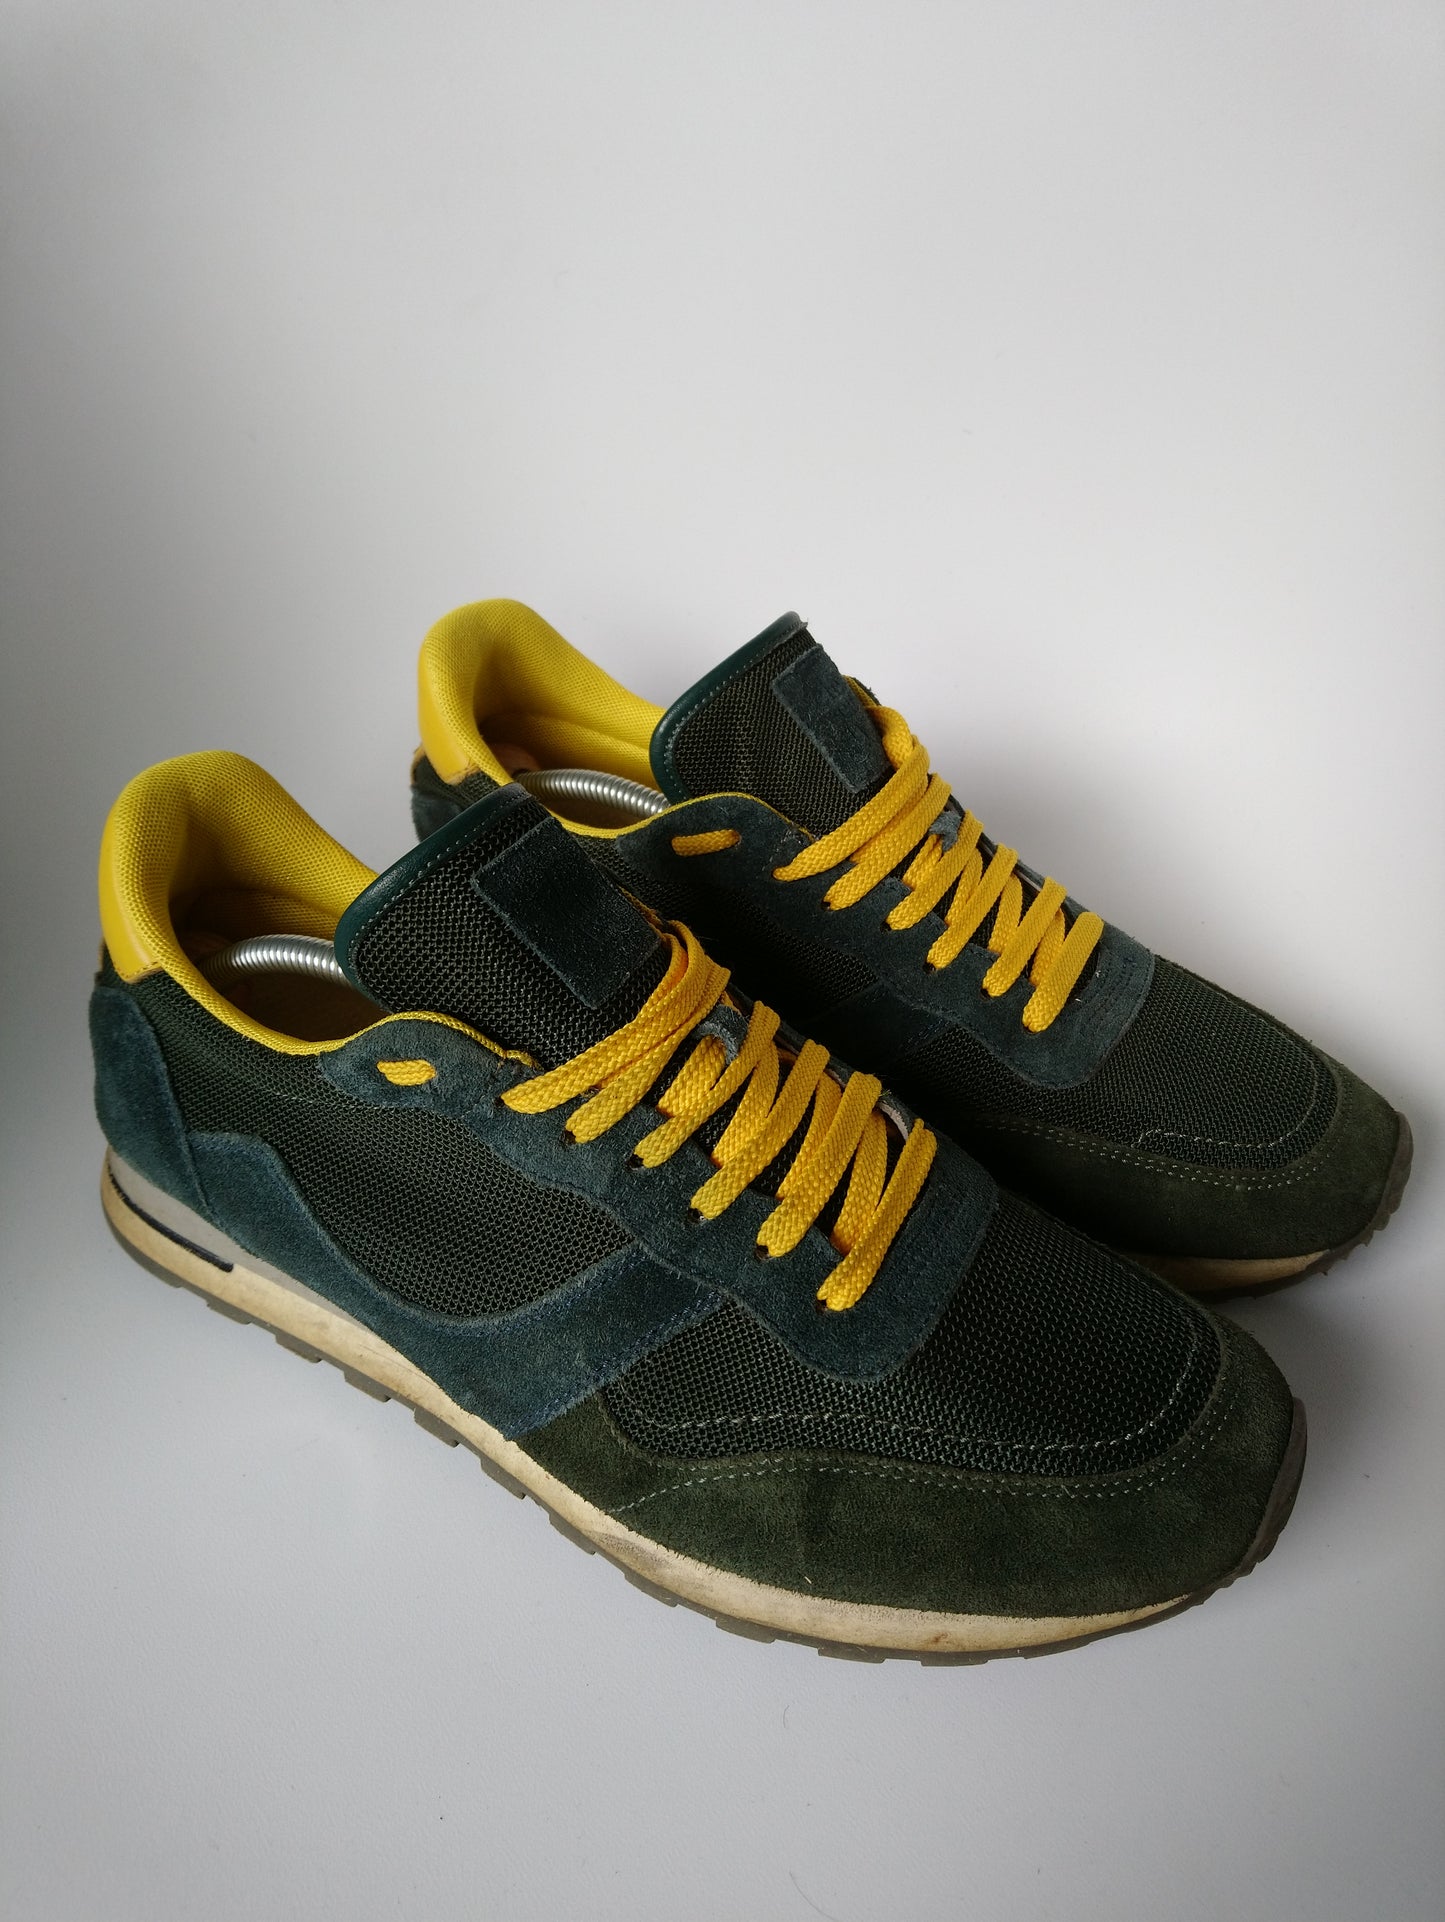 ELEA / 11TY Sneakers. Color amarillo verde oscuro de color. Tamaño 43.